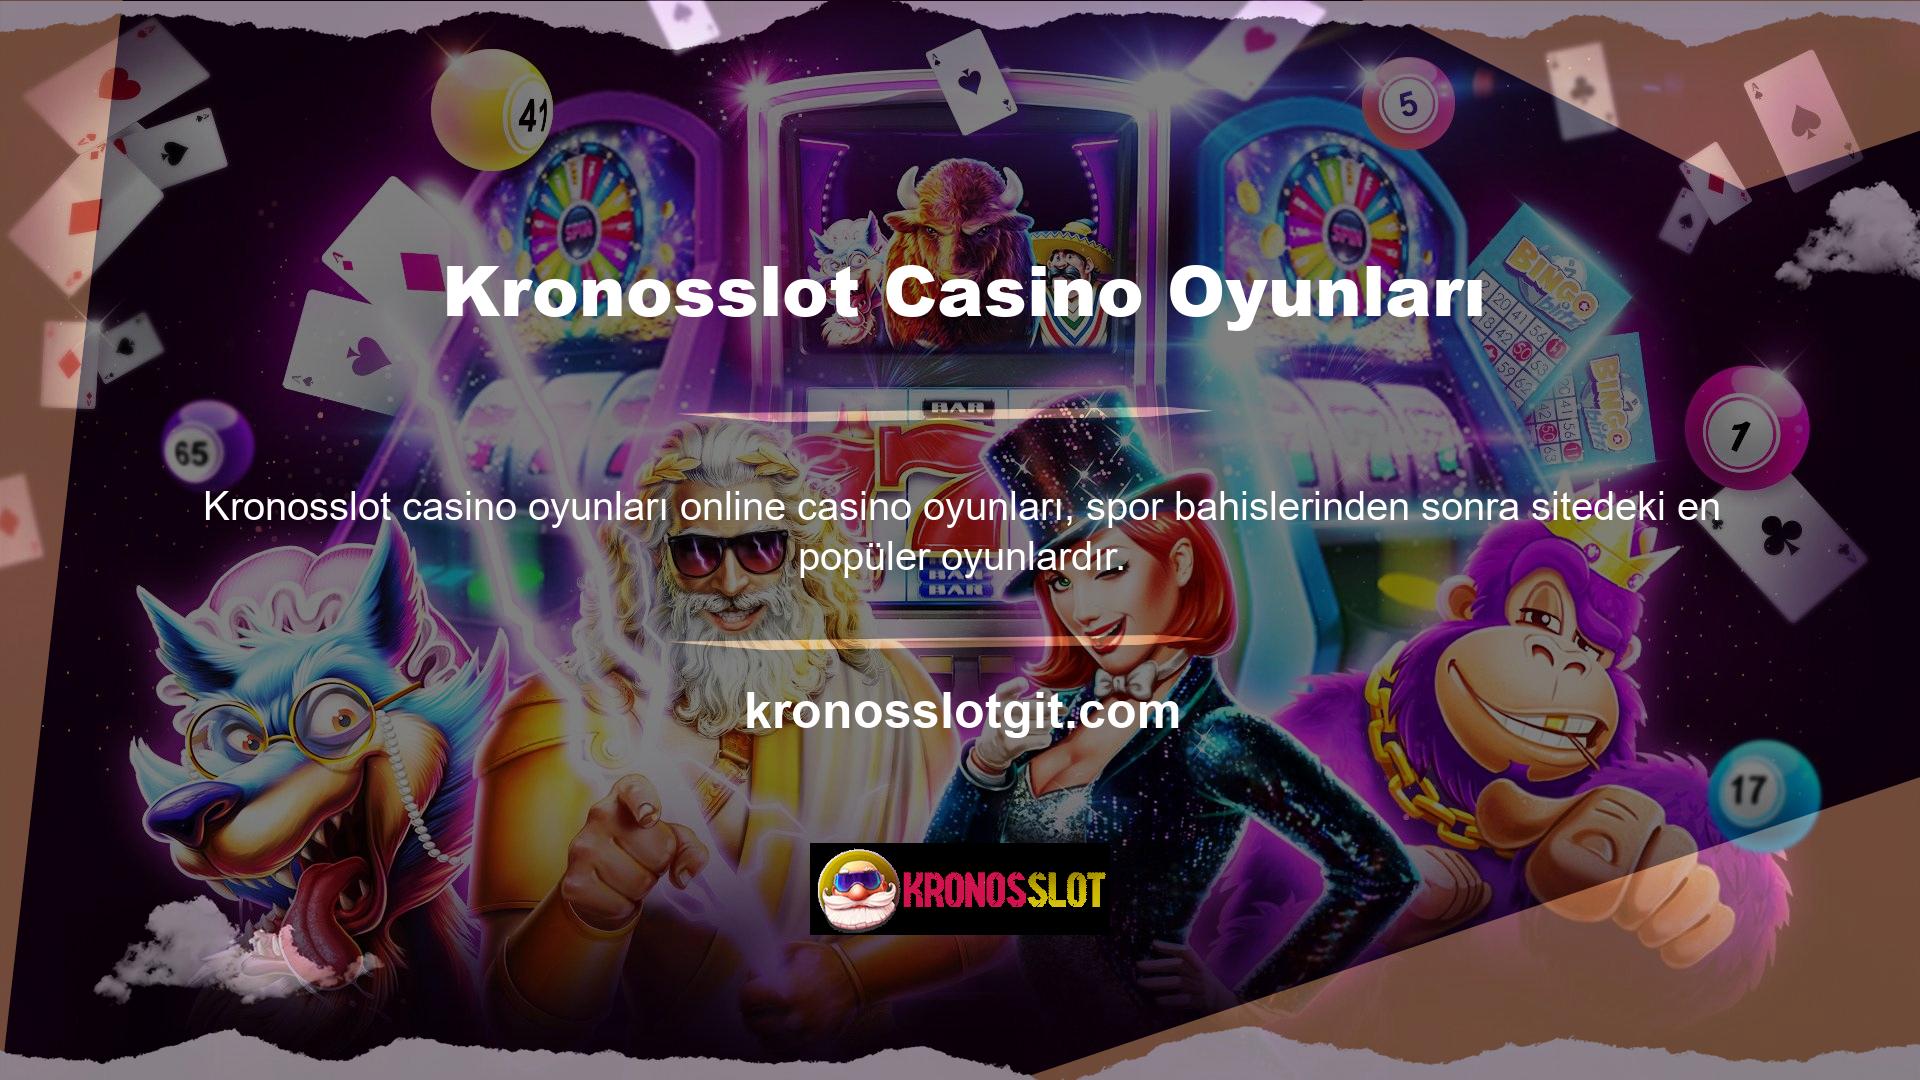 Kaliteli online casino siteleri ile evinize daha yakın gerçek casino deneyiminin tadını çıkarabilirsiniz